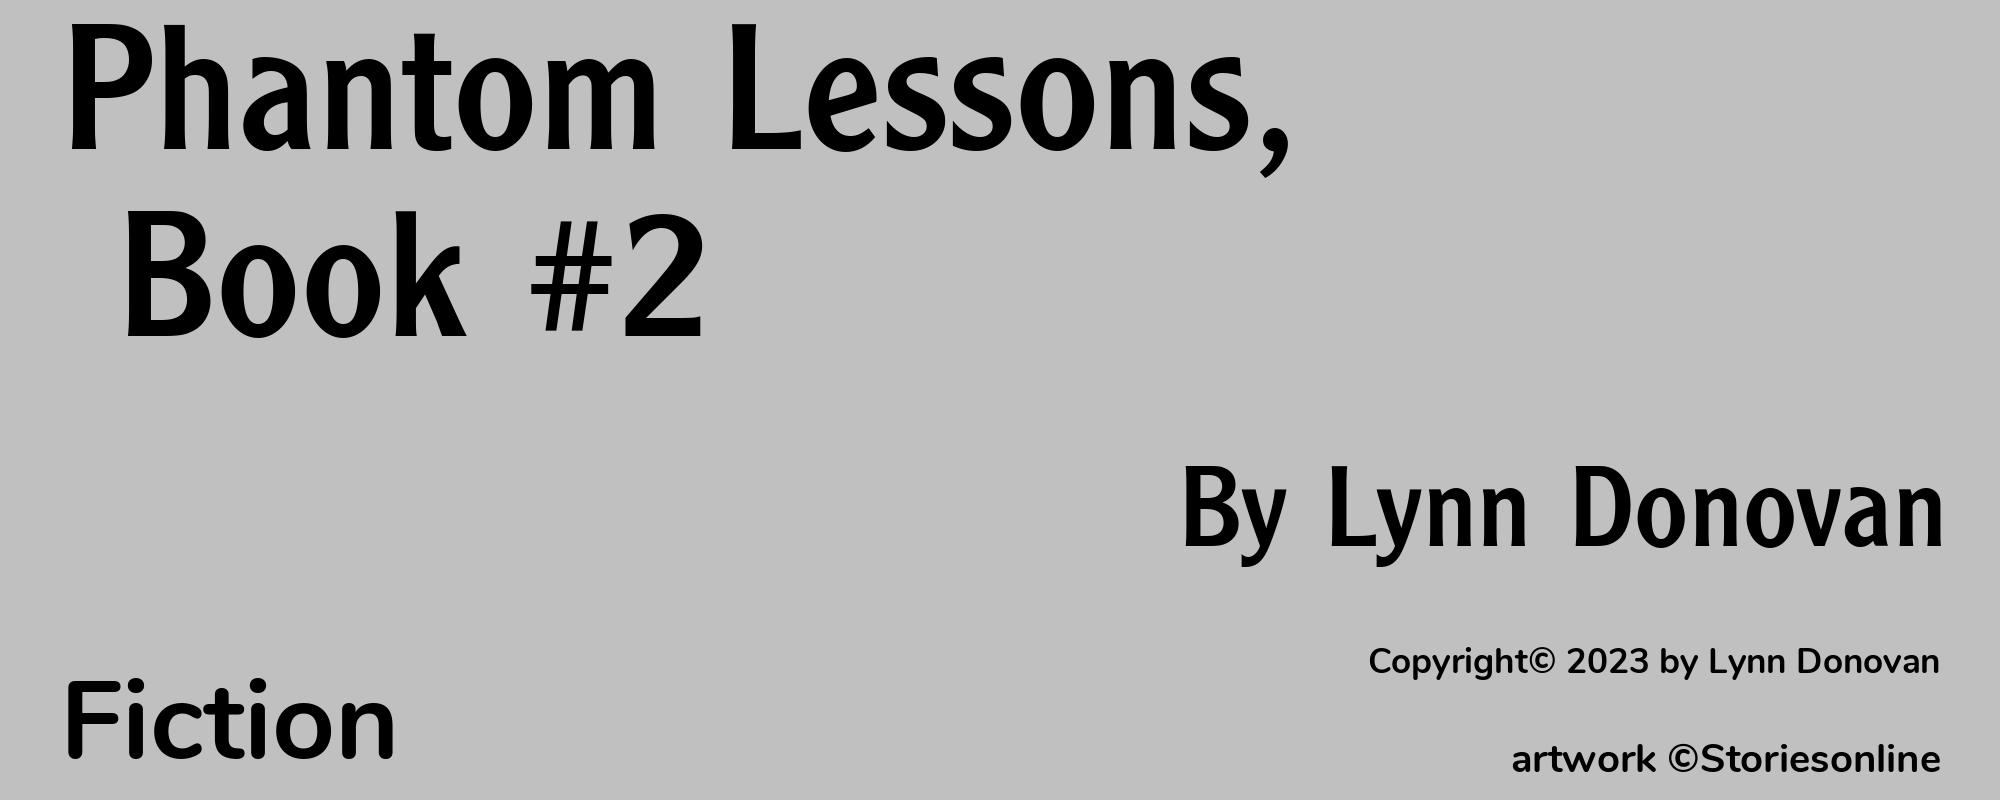 Phantom Lessons, Book #2 - Cover